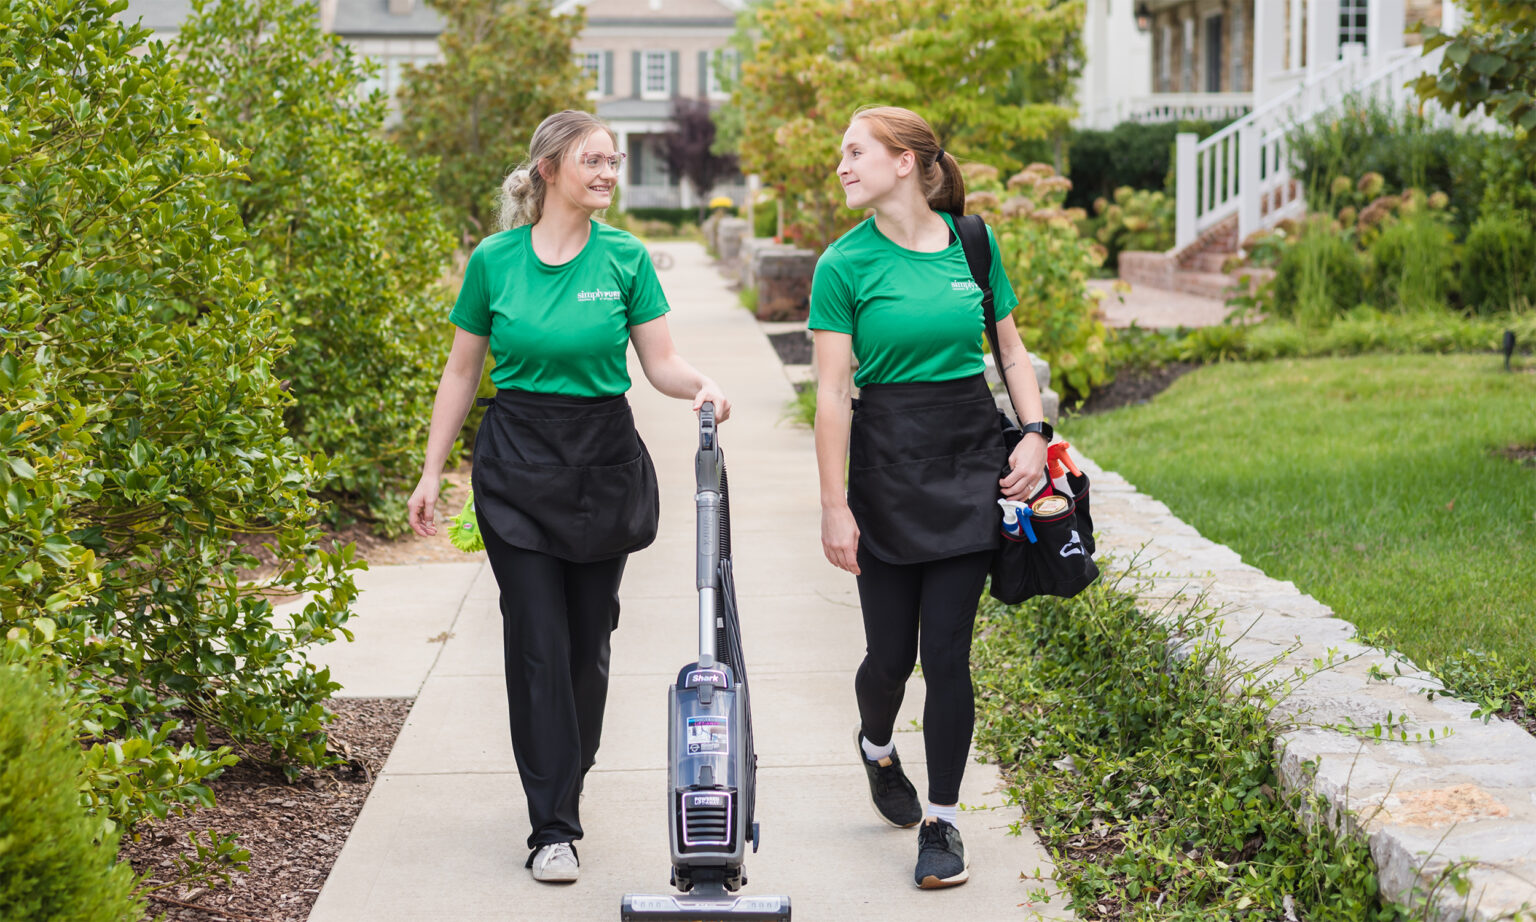 Two cleaning team members walking to job in neighborhood